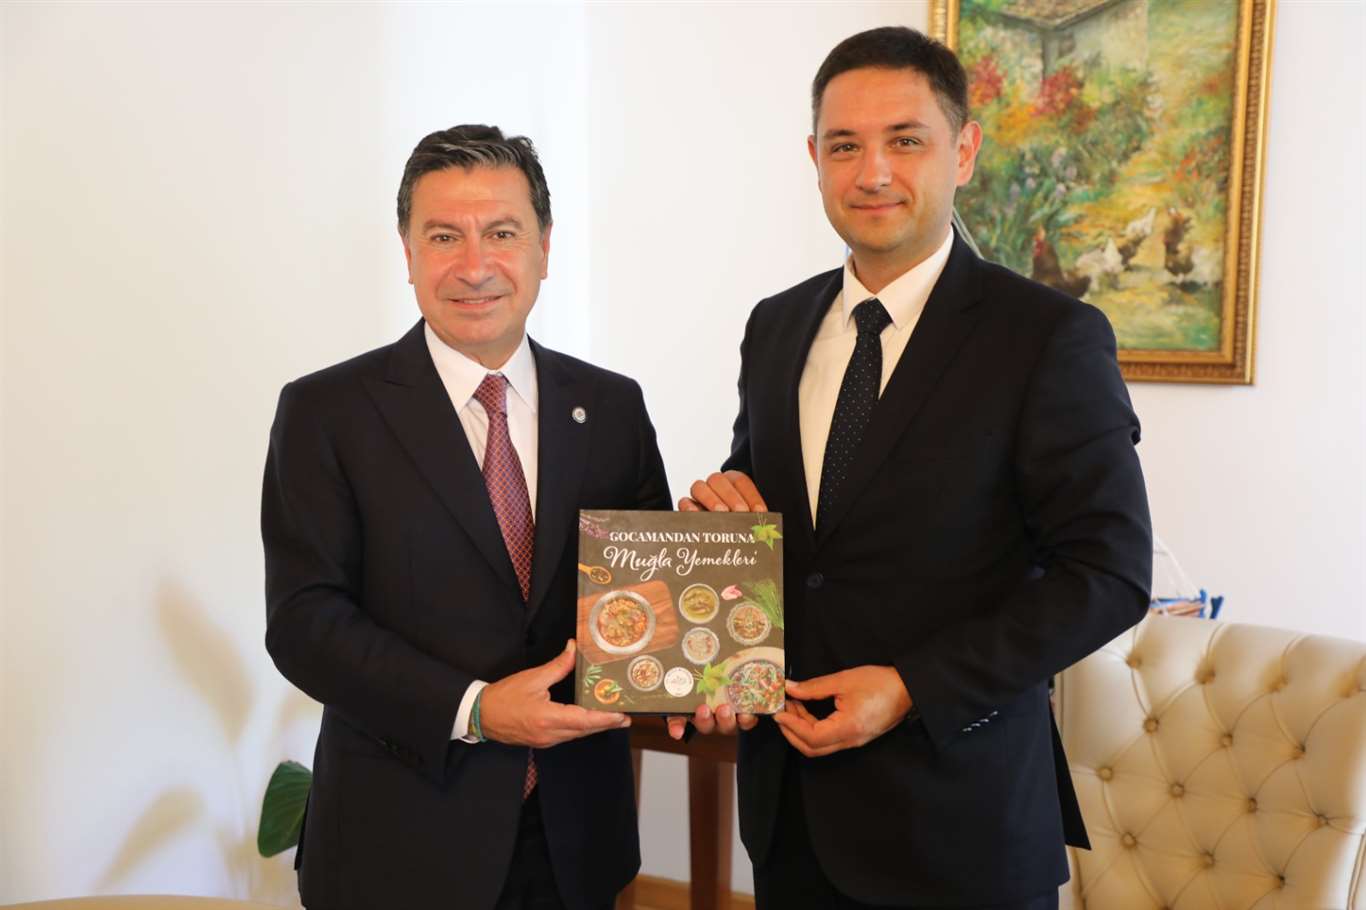    Ukrayna Antalya Konsolosu'ndan Başkan Aras'a ziyaret haberi